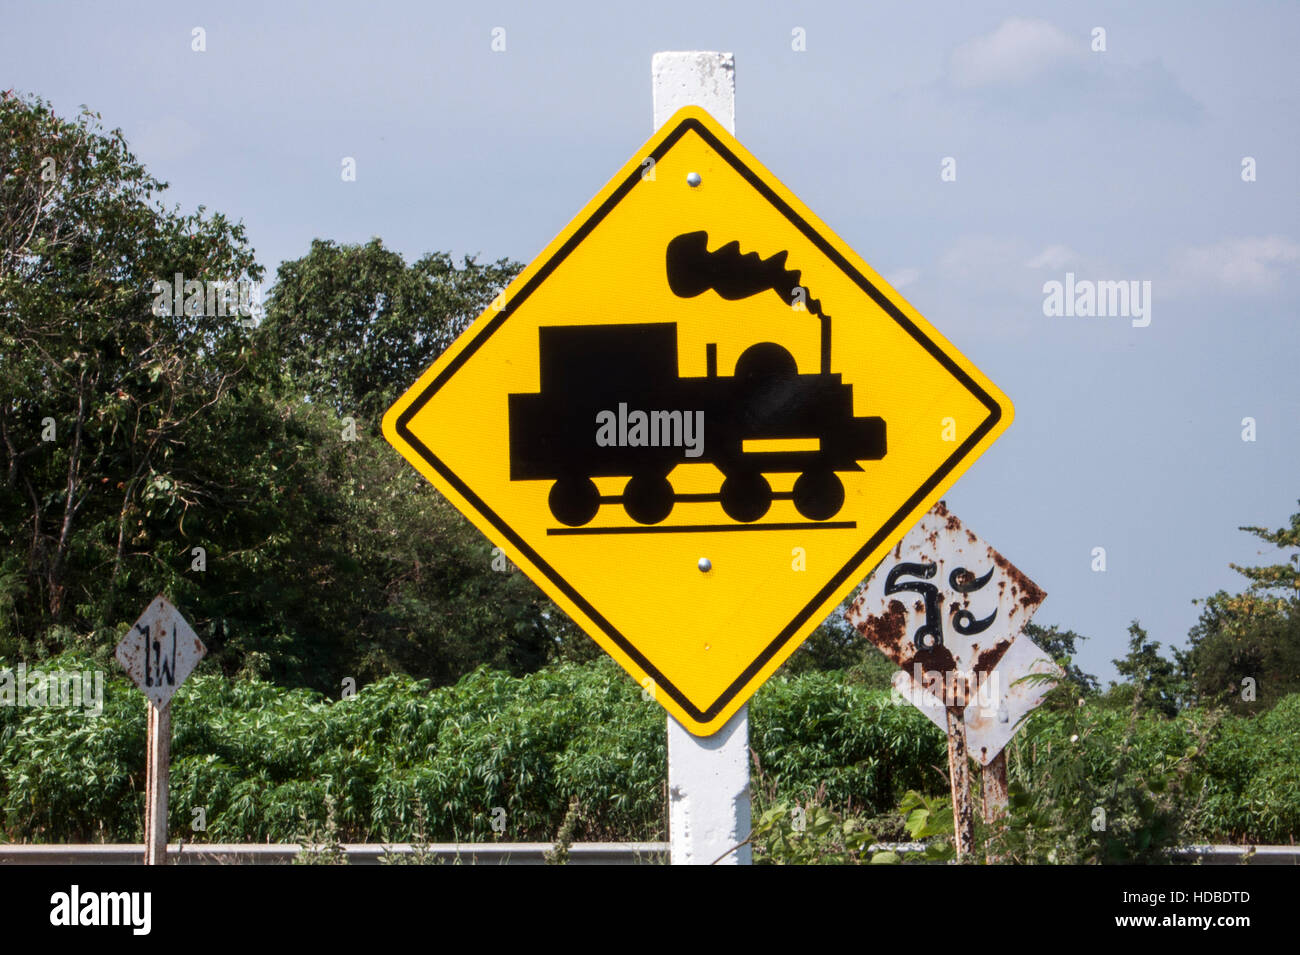 Road sign warning of Burma Railway train near Kanchanaburi Thailand Stock Photo